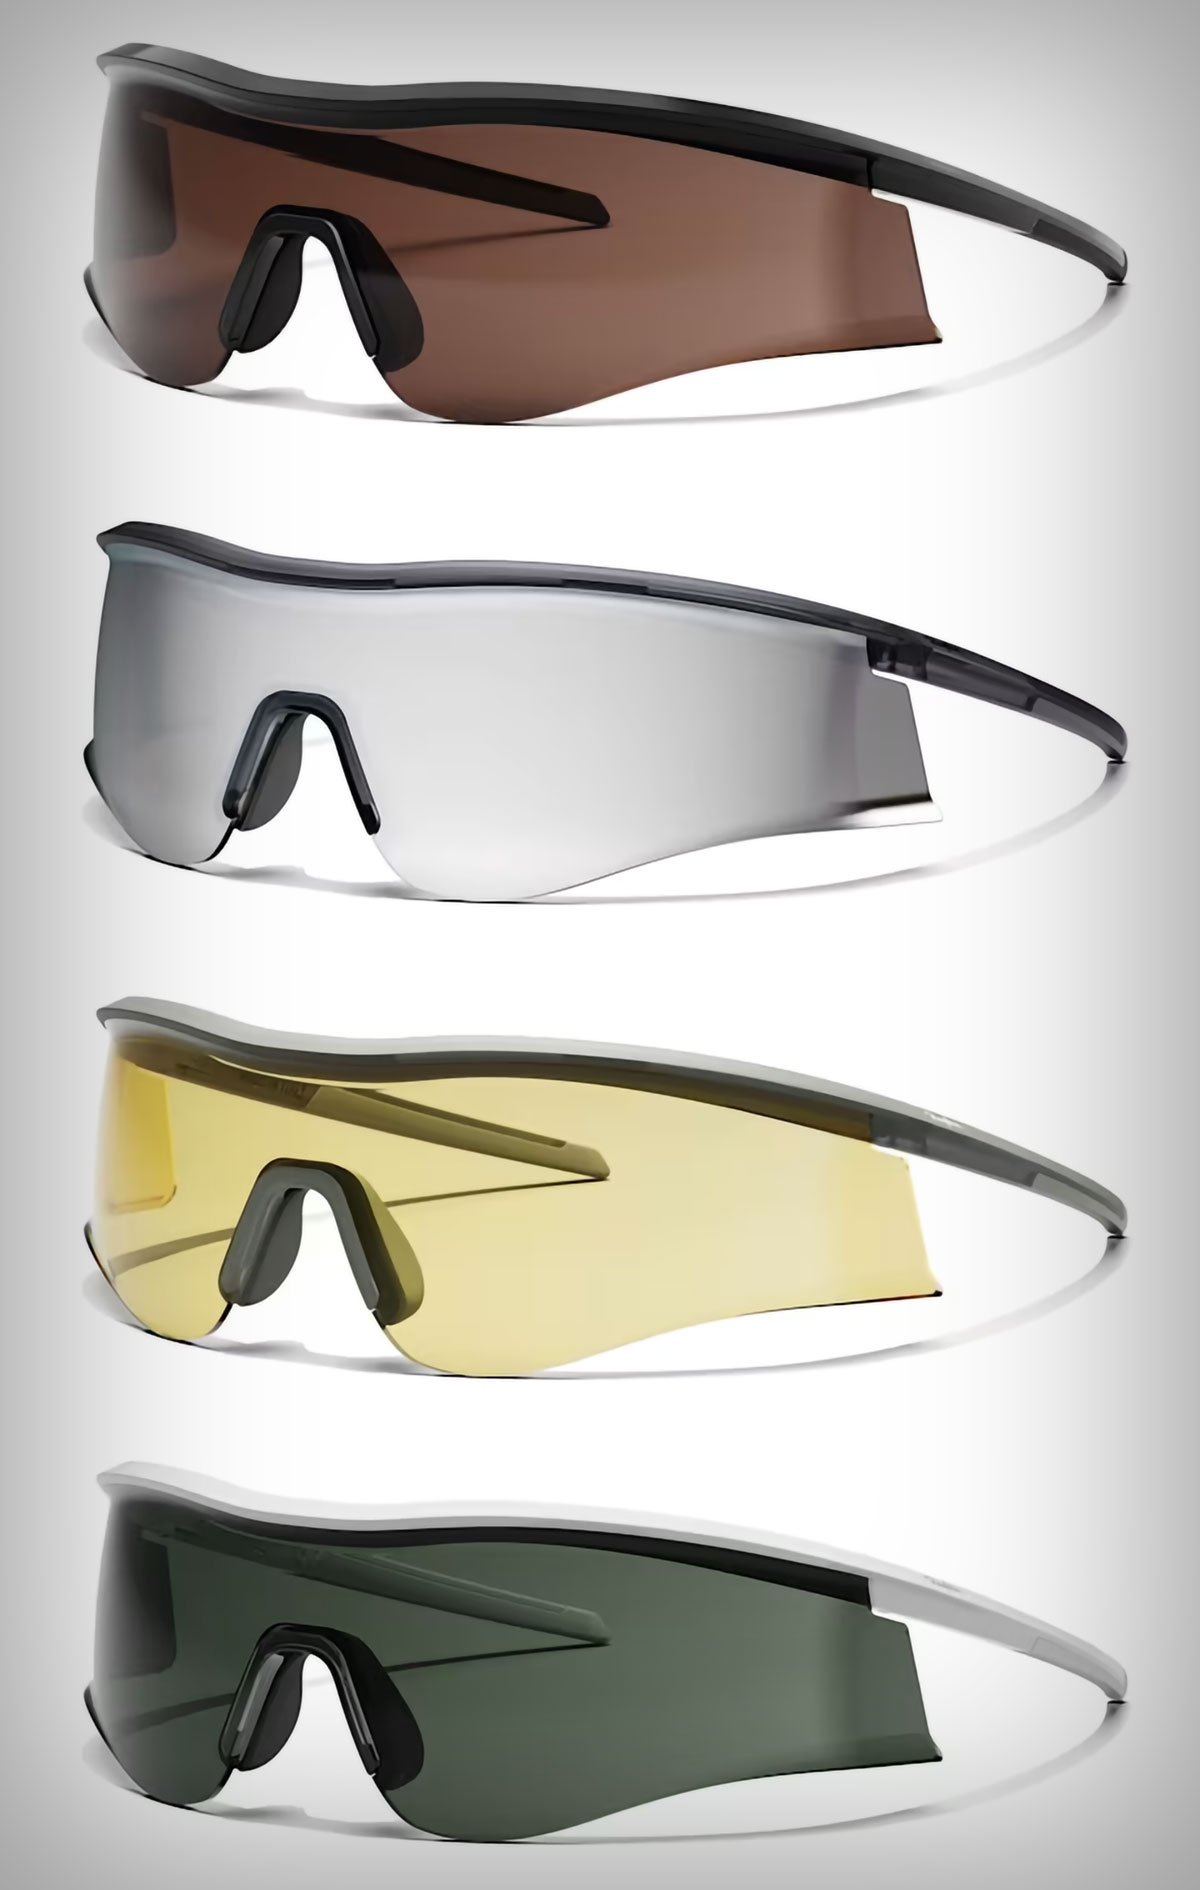 Rapha se estrena en el mercado de las gafas de ciclismo con tres modelos con lentes de distintos tonos que mejoran el contraste